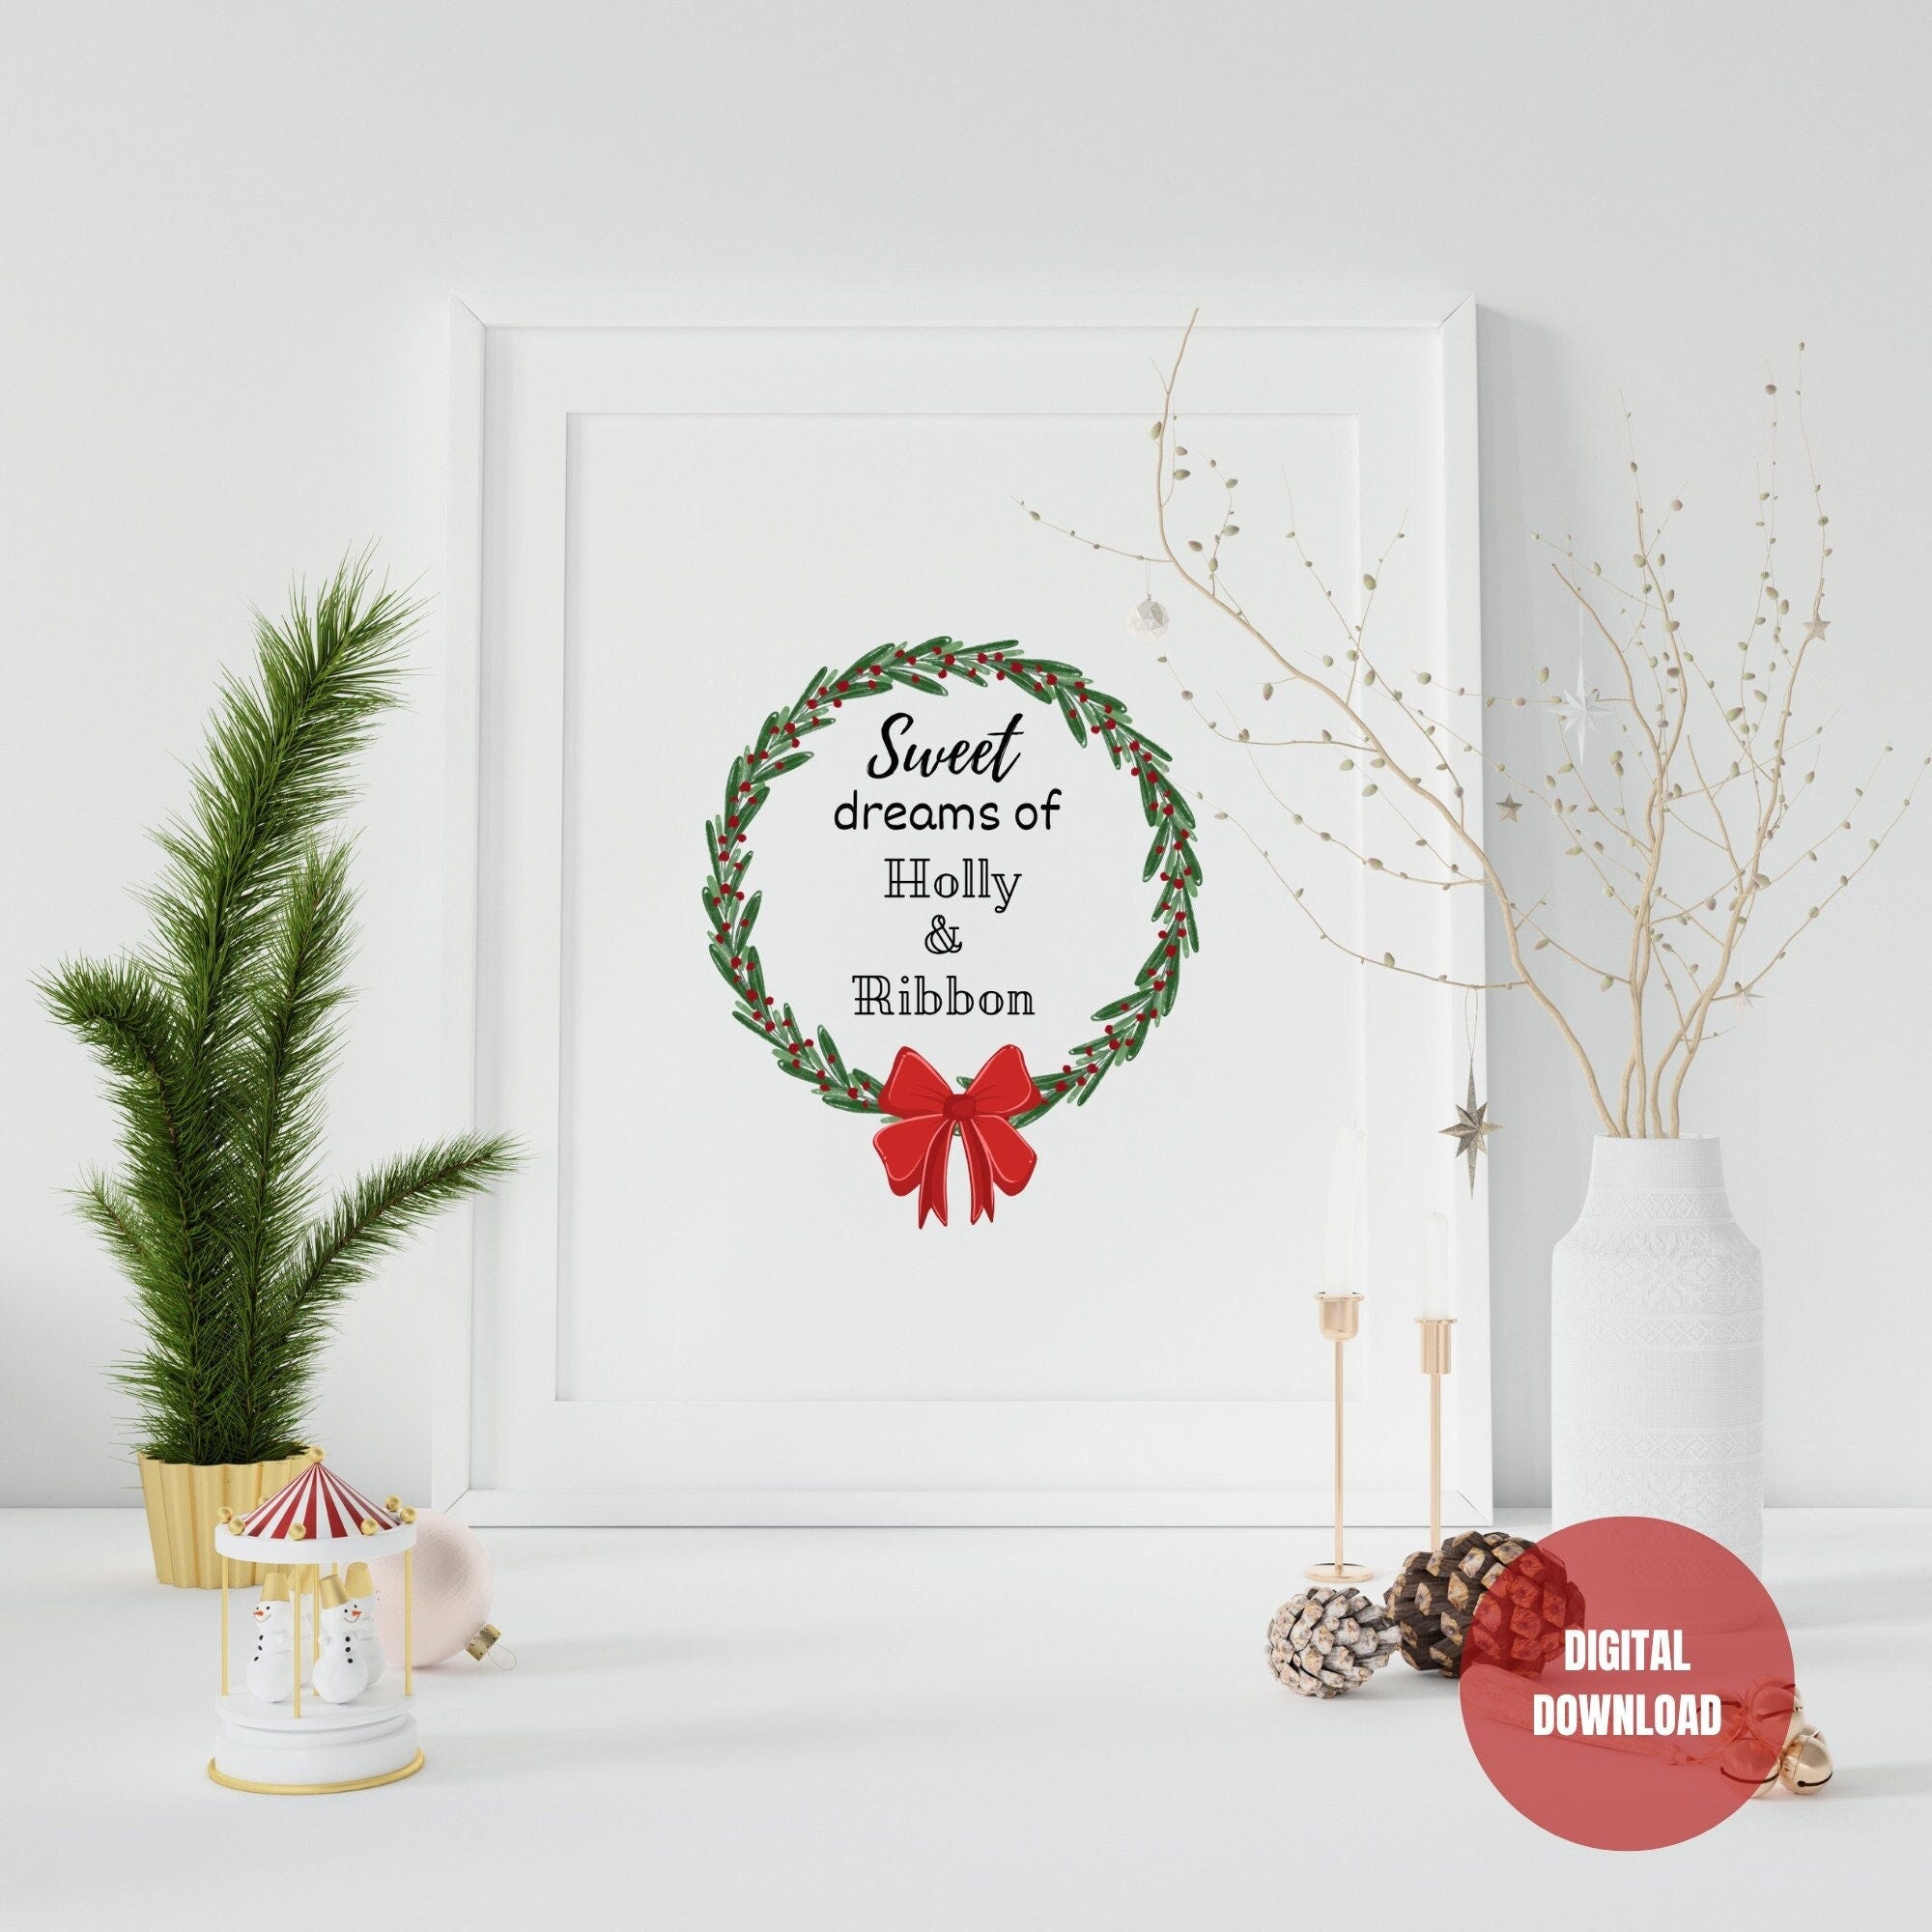 Christmas Tree Farm Taylor Swift lyrics printable, Taylor Swift Christmas lyrics wall art, Sweet dreams of holly and ribbon, home decor